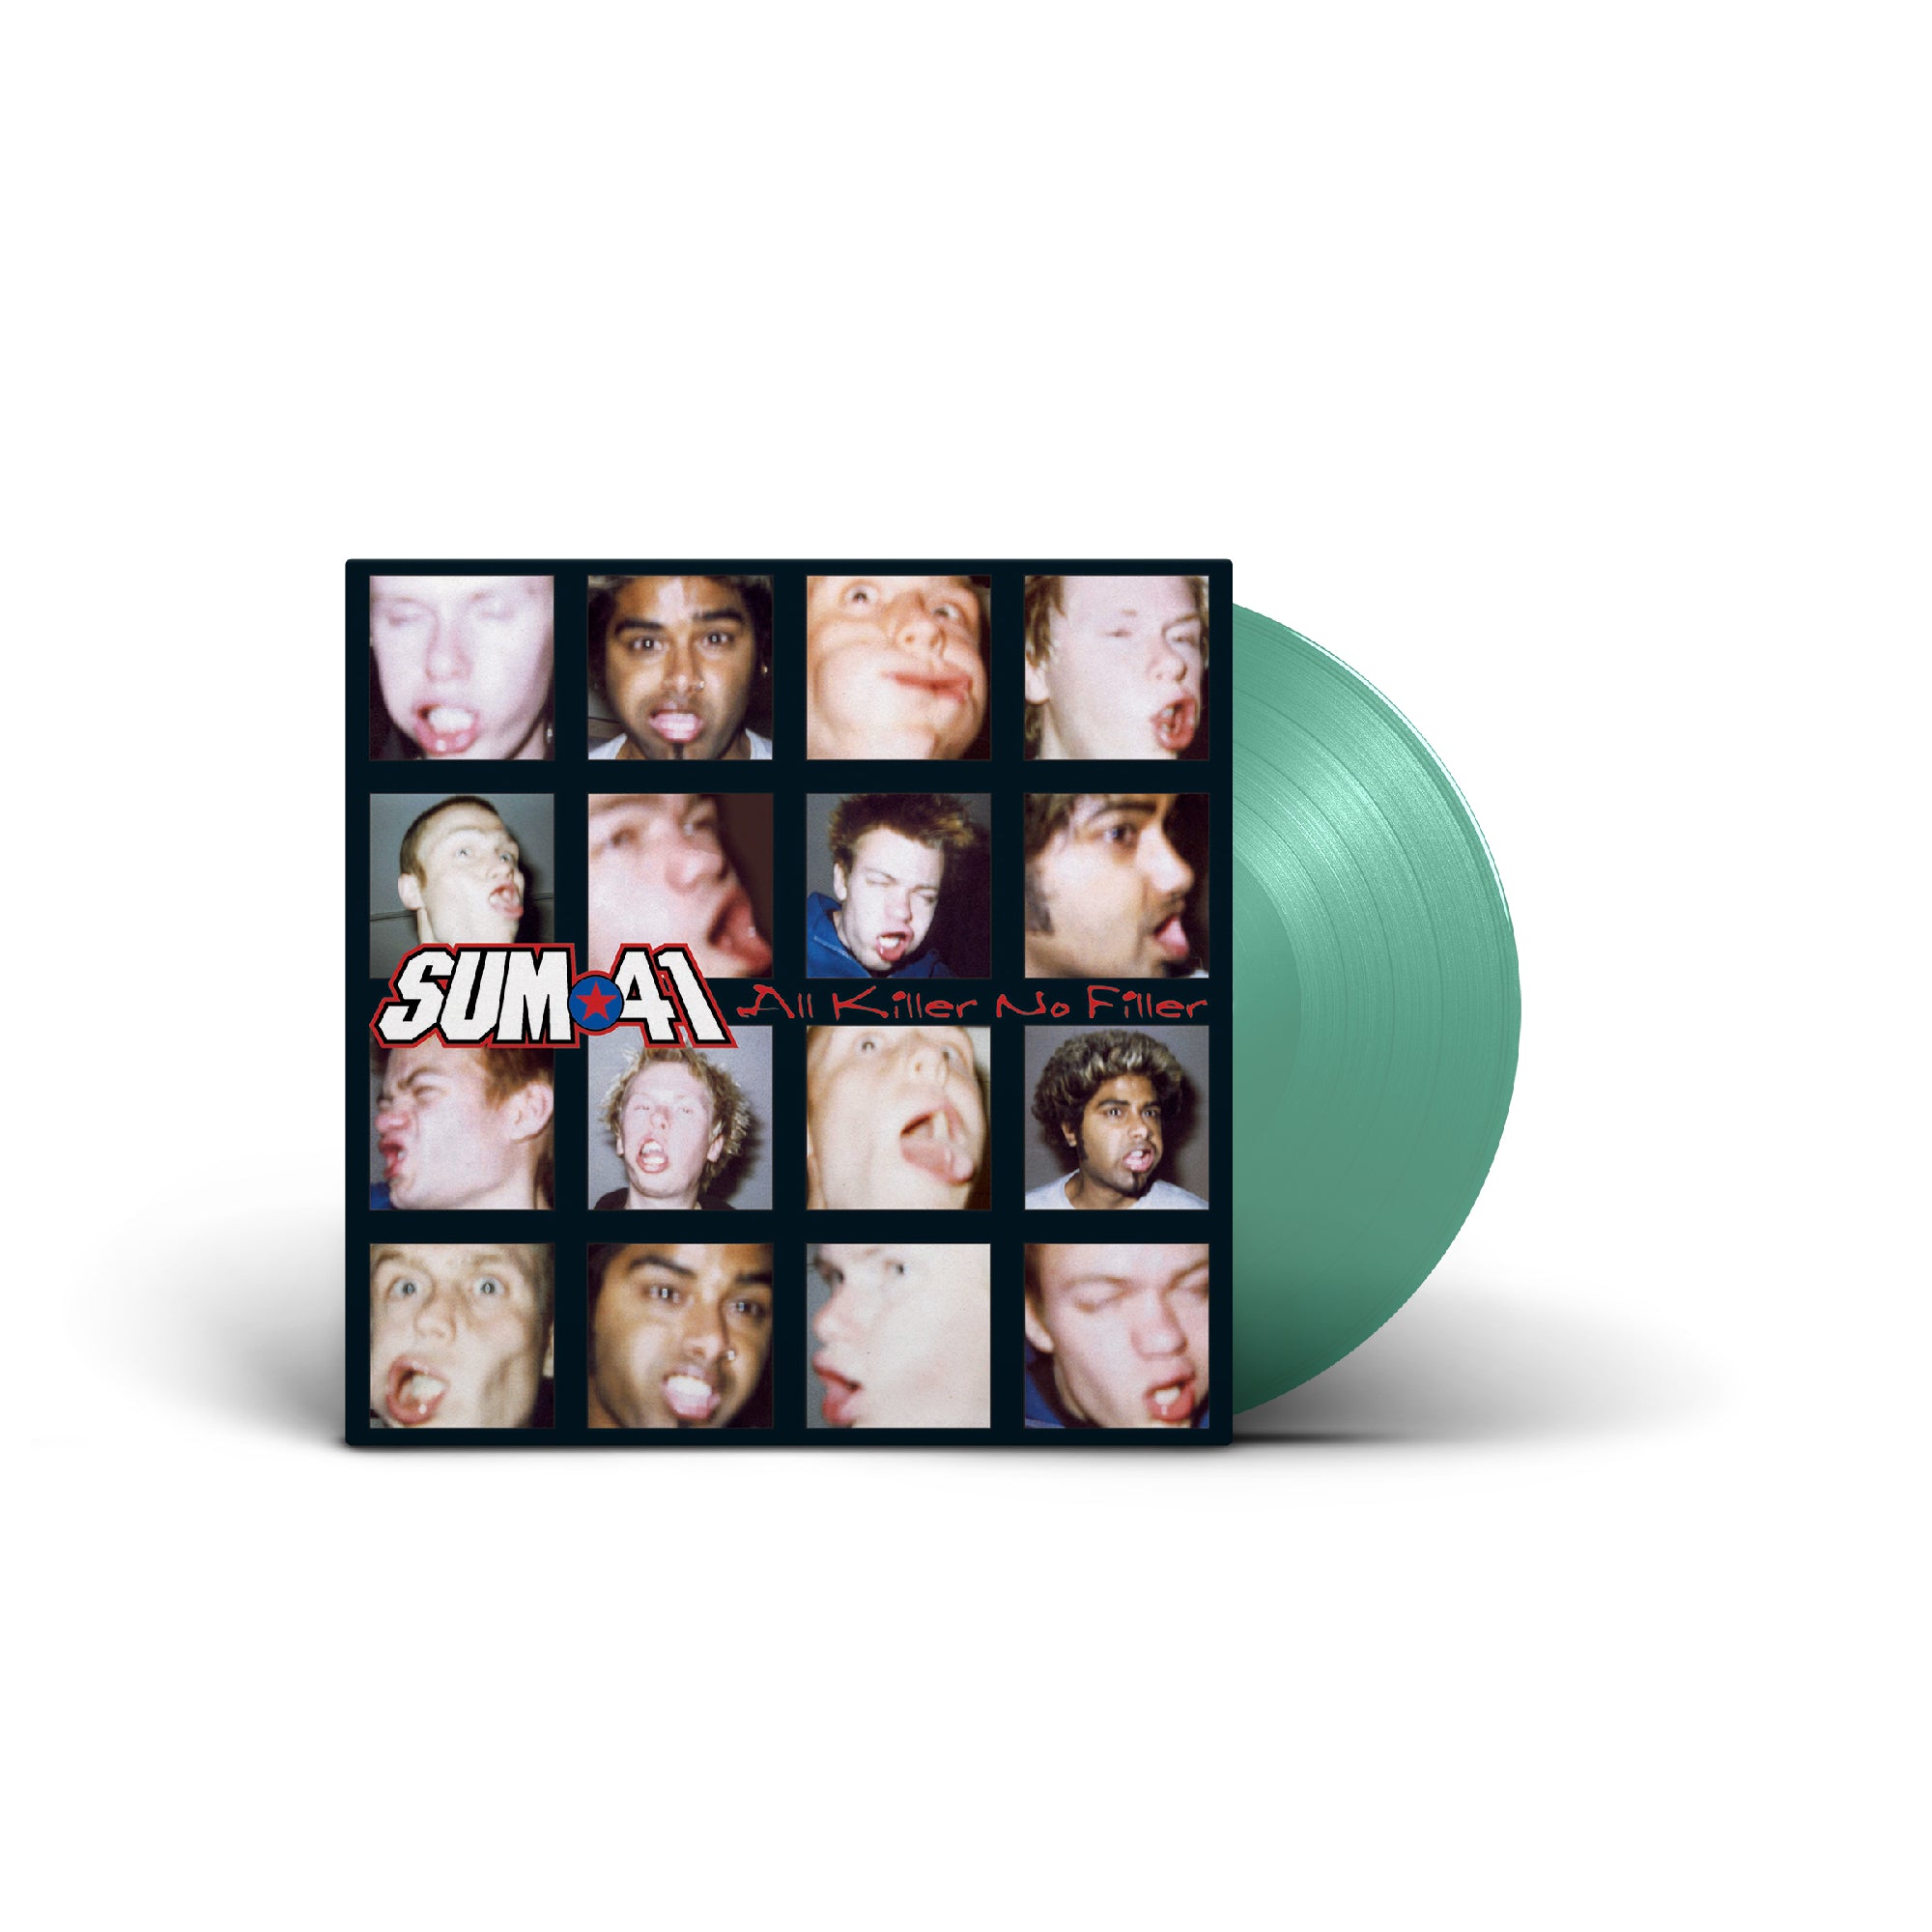 Sum 41 - All Killer No Filler: Coke Bottle Green Vinyl LP